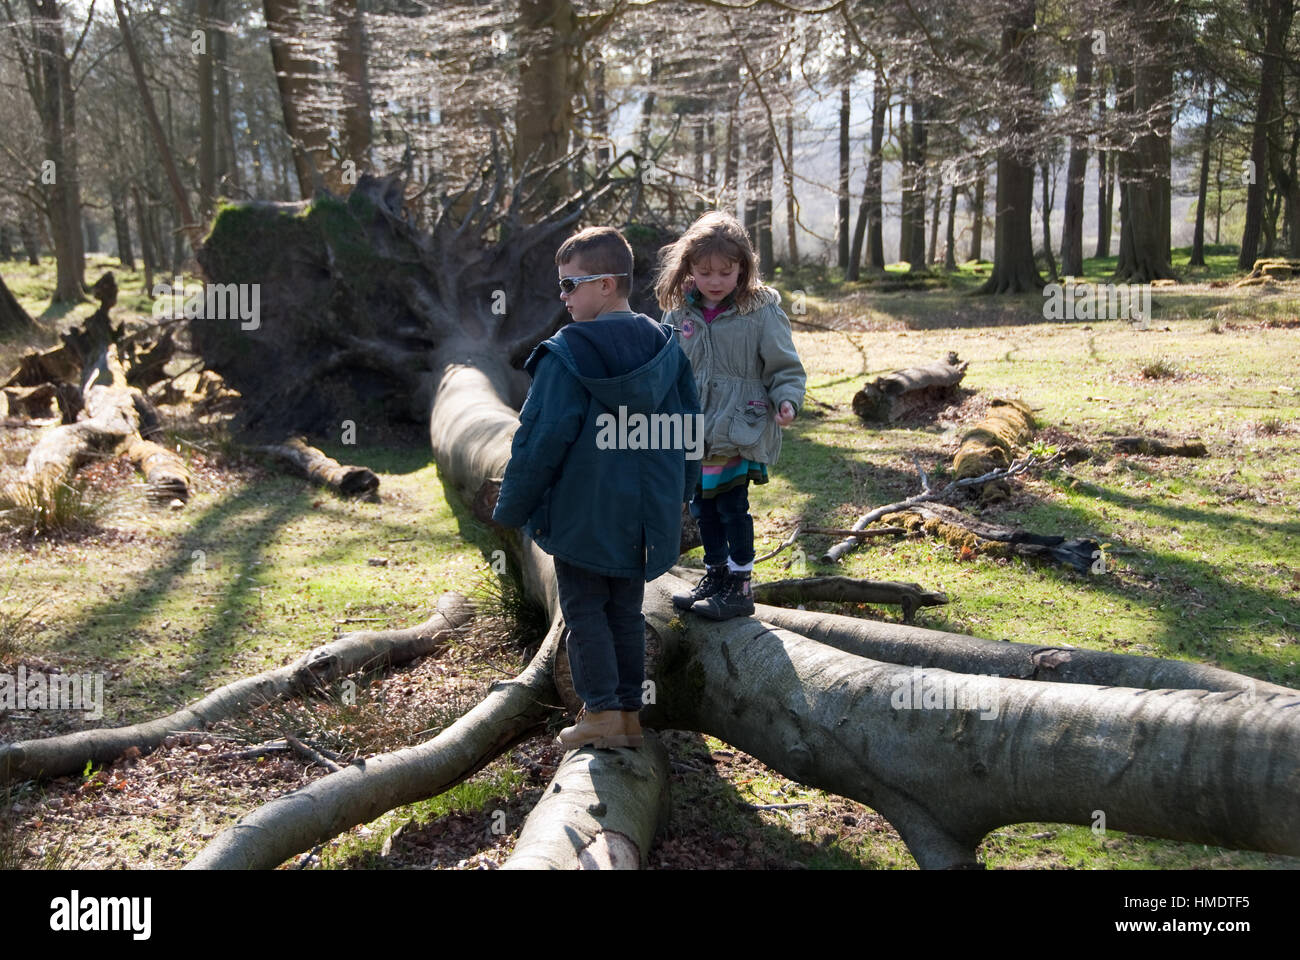 Derbyshire, UK - April 04: Kinder spielen auf einem gefallenen Baumstamm am 18. April bei Longshaw Estate, Peak District, UK Stockfoto